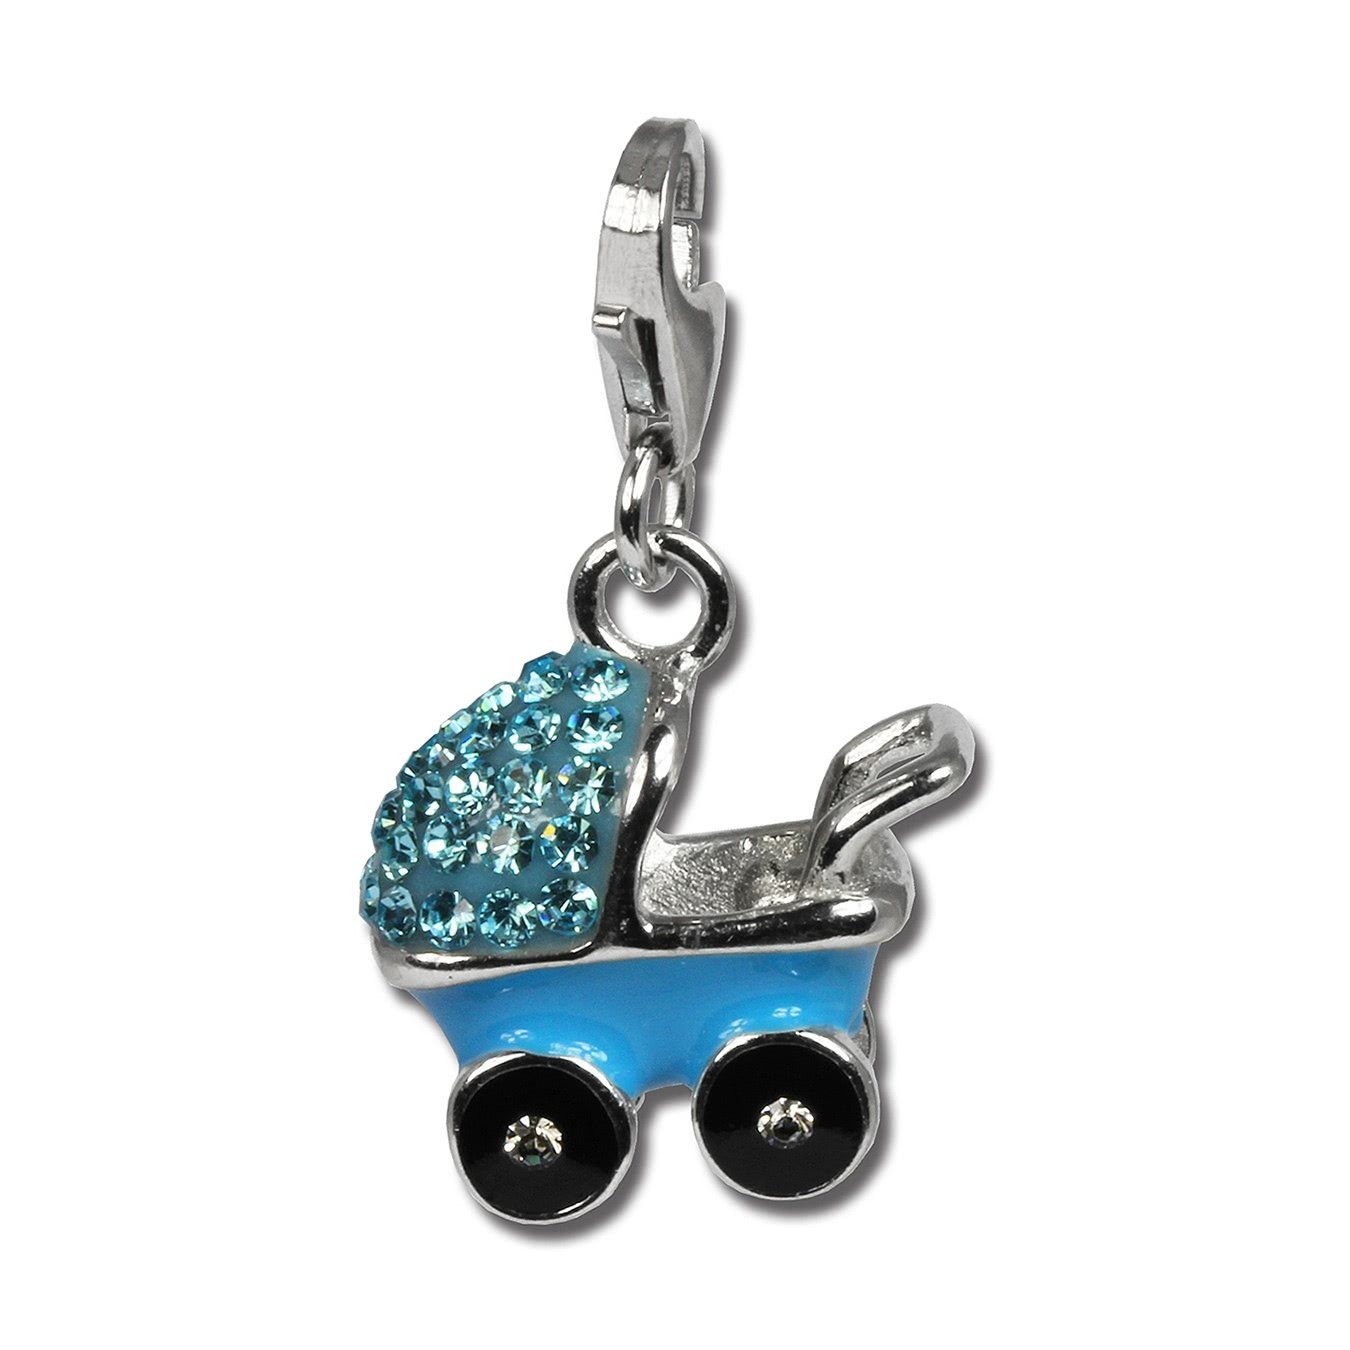 SilberDream Charm-Einhänger SilberDream blau Charm Kinderwagen (Charmsanhänger), Charmsanhänger Kinderwagen, 925 Sterling Silber, Farbe: hellblau, weiß